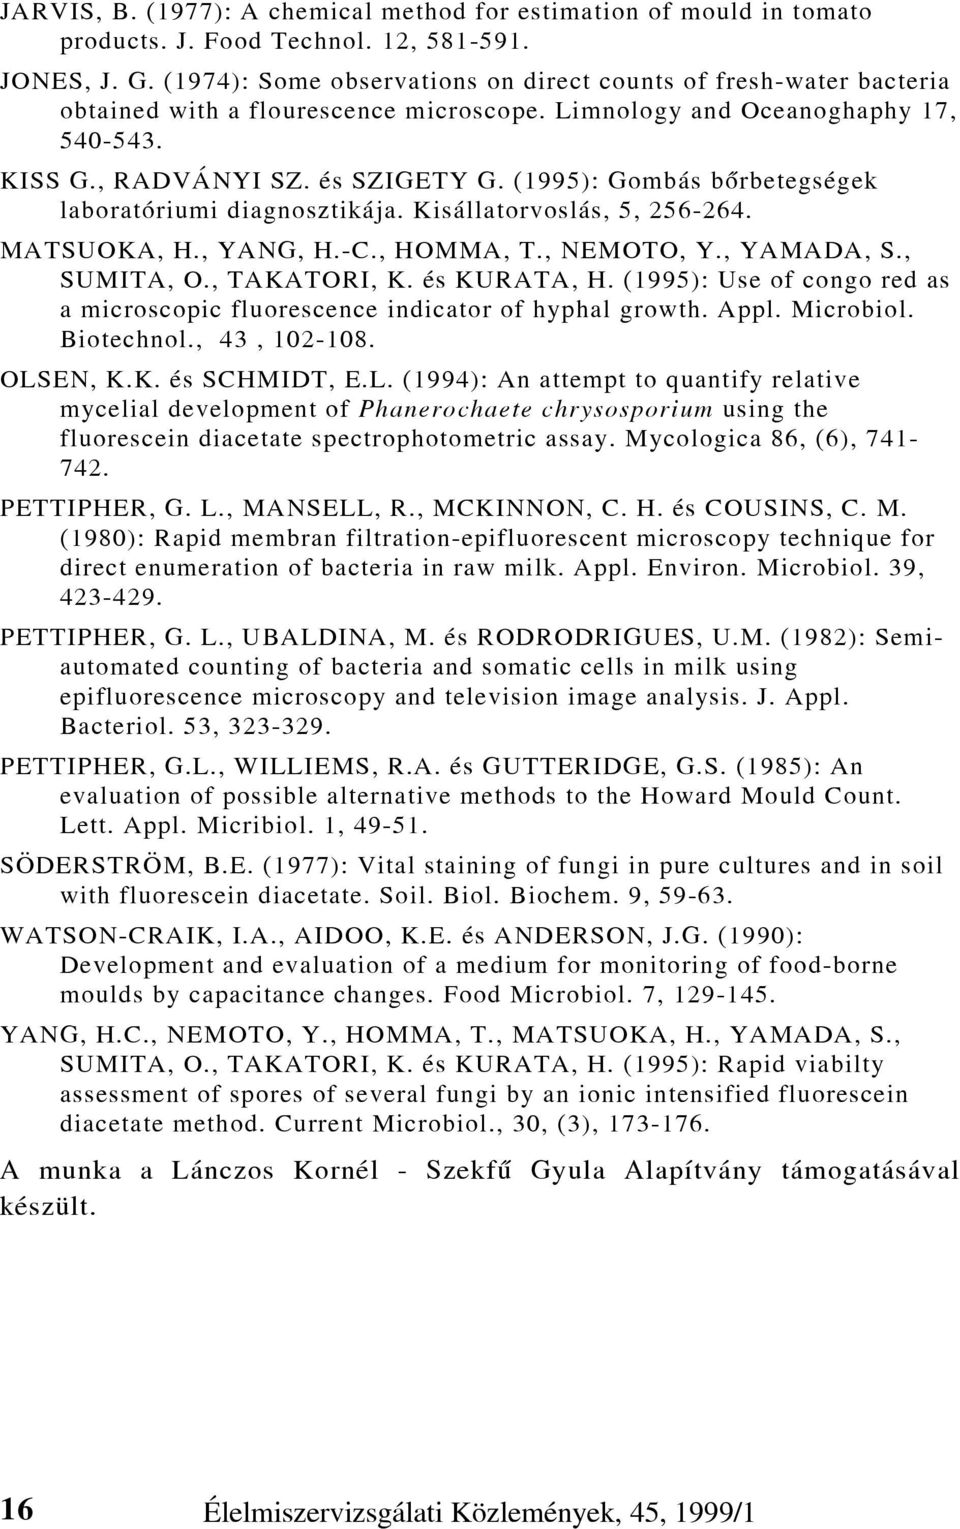 (1995): Gombás bõrbetegségek laboratóriumi diagnosztikája. Kisállatorvoslás, 5, 256-264. MATSUOKA, H., YANG, H.-C., HOMMA, T., NEMOTO, Y., YAMADA, S., SUMITA, O., TAKATORI, K. és KURATA, H.